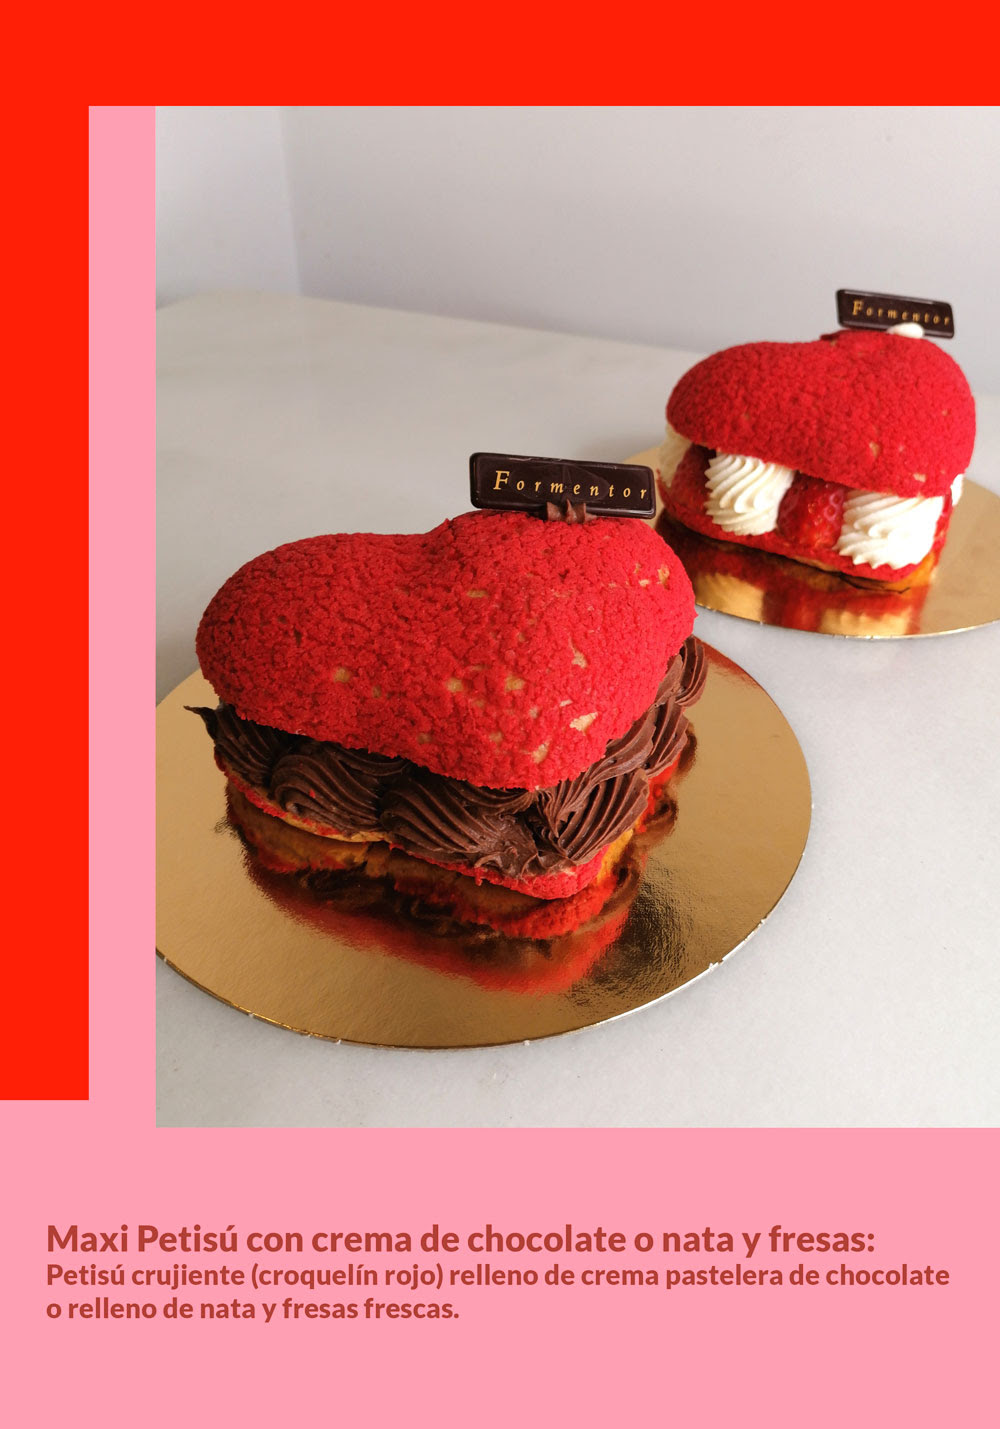 Formentor es una de las pastelerías de Madrid que le ha dado la vuelta a los dulces por San Valentín